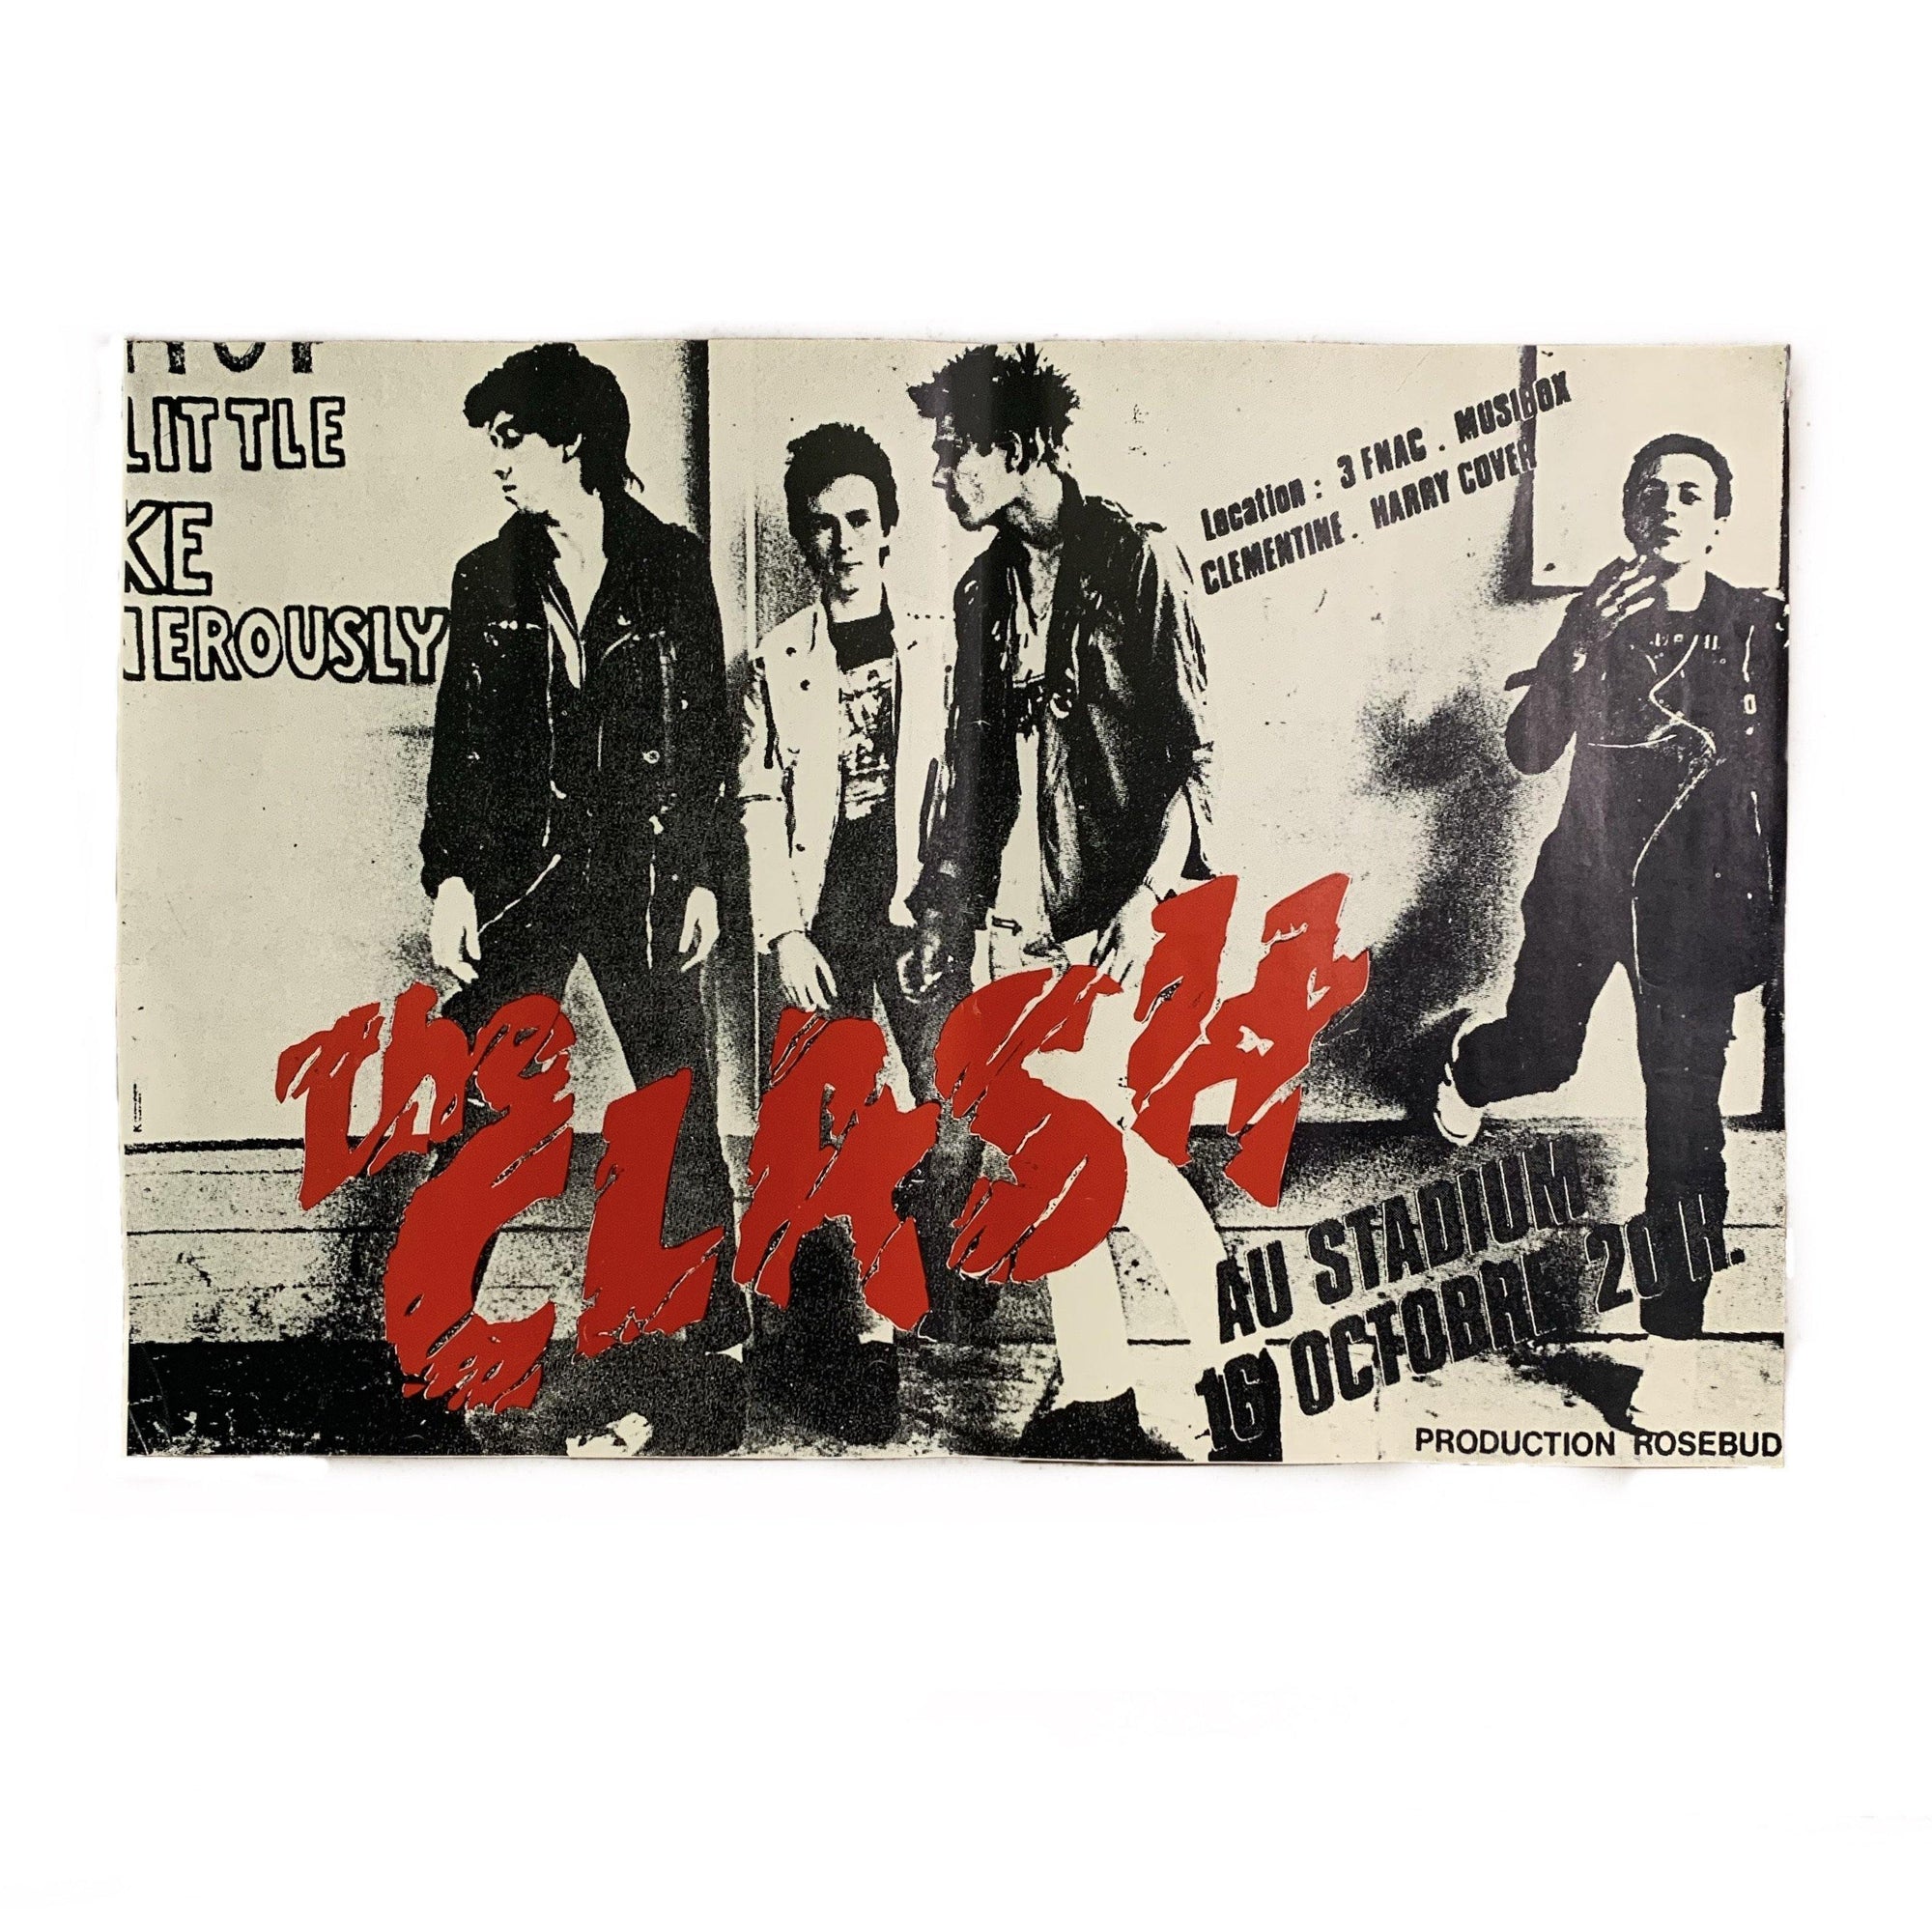  The Clash at Le stadium Paris France October 16 1978 